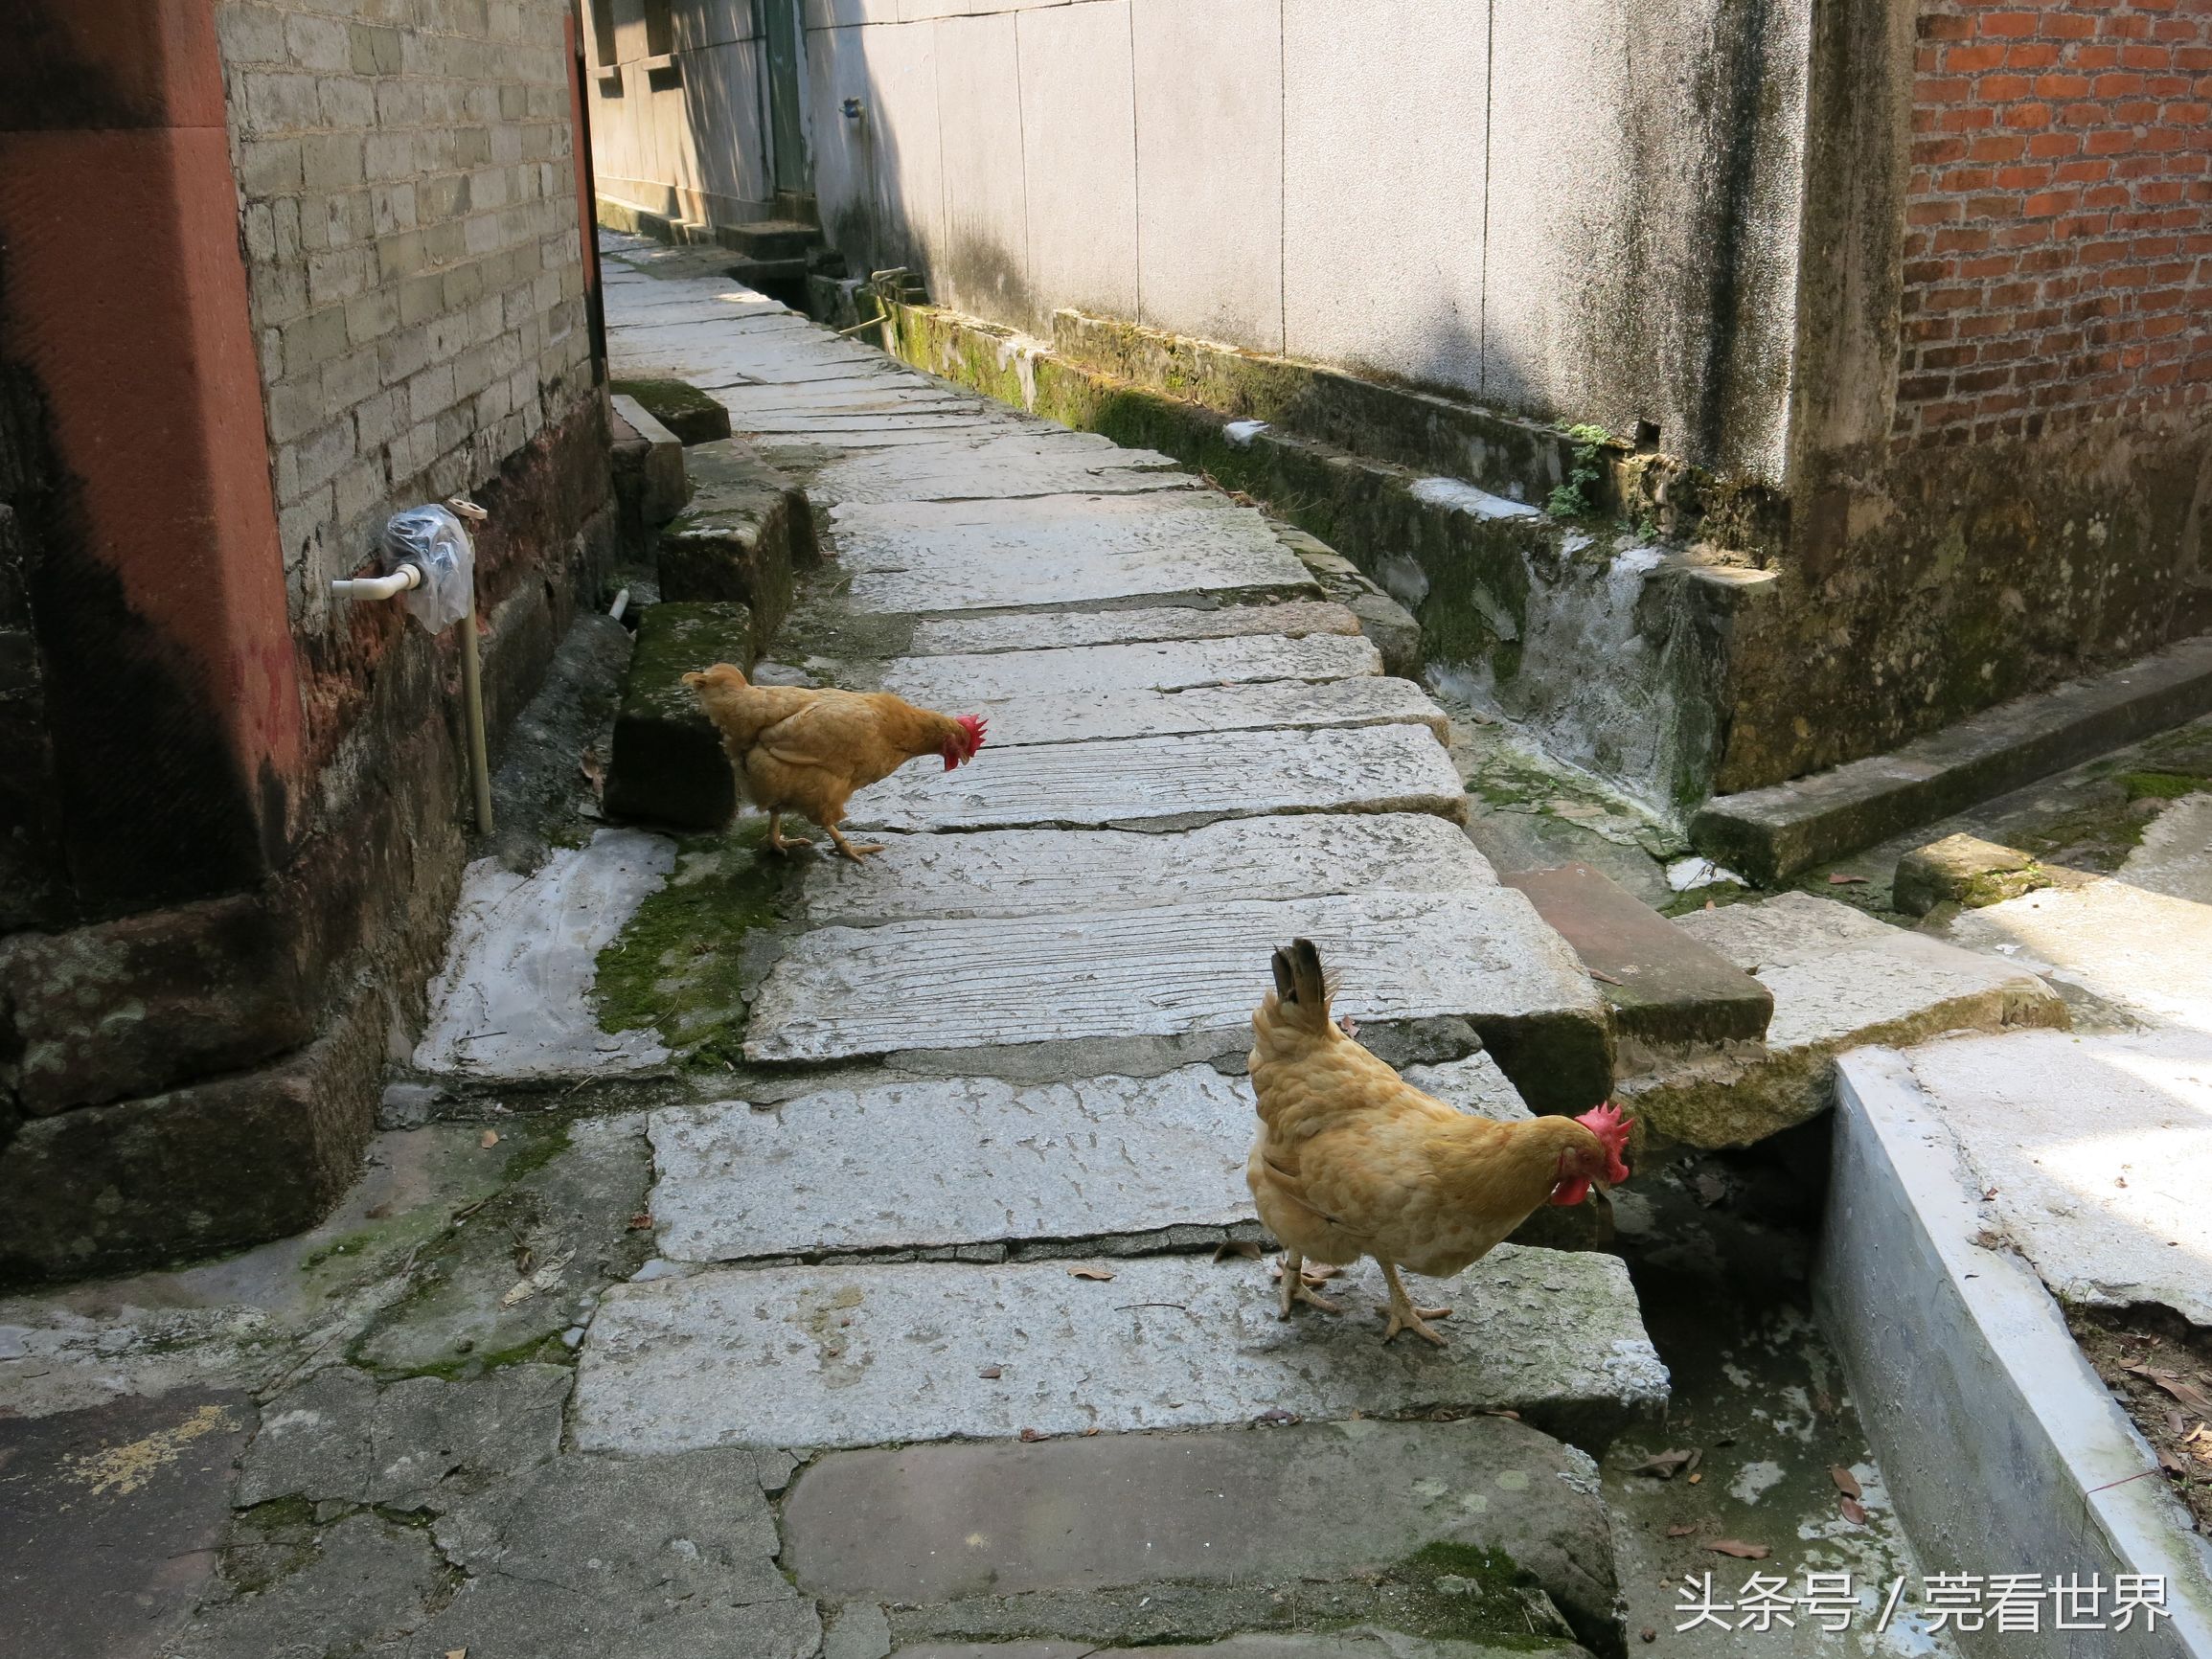 古村的石板巷道上,两只鸡在悠闲踱步.